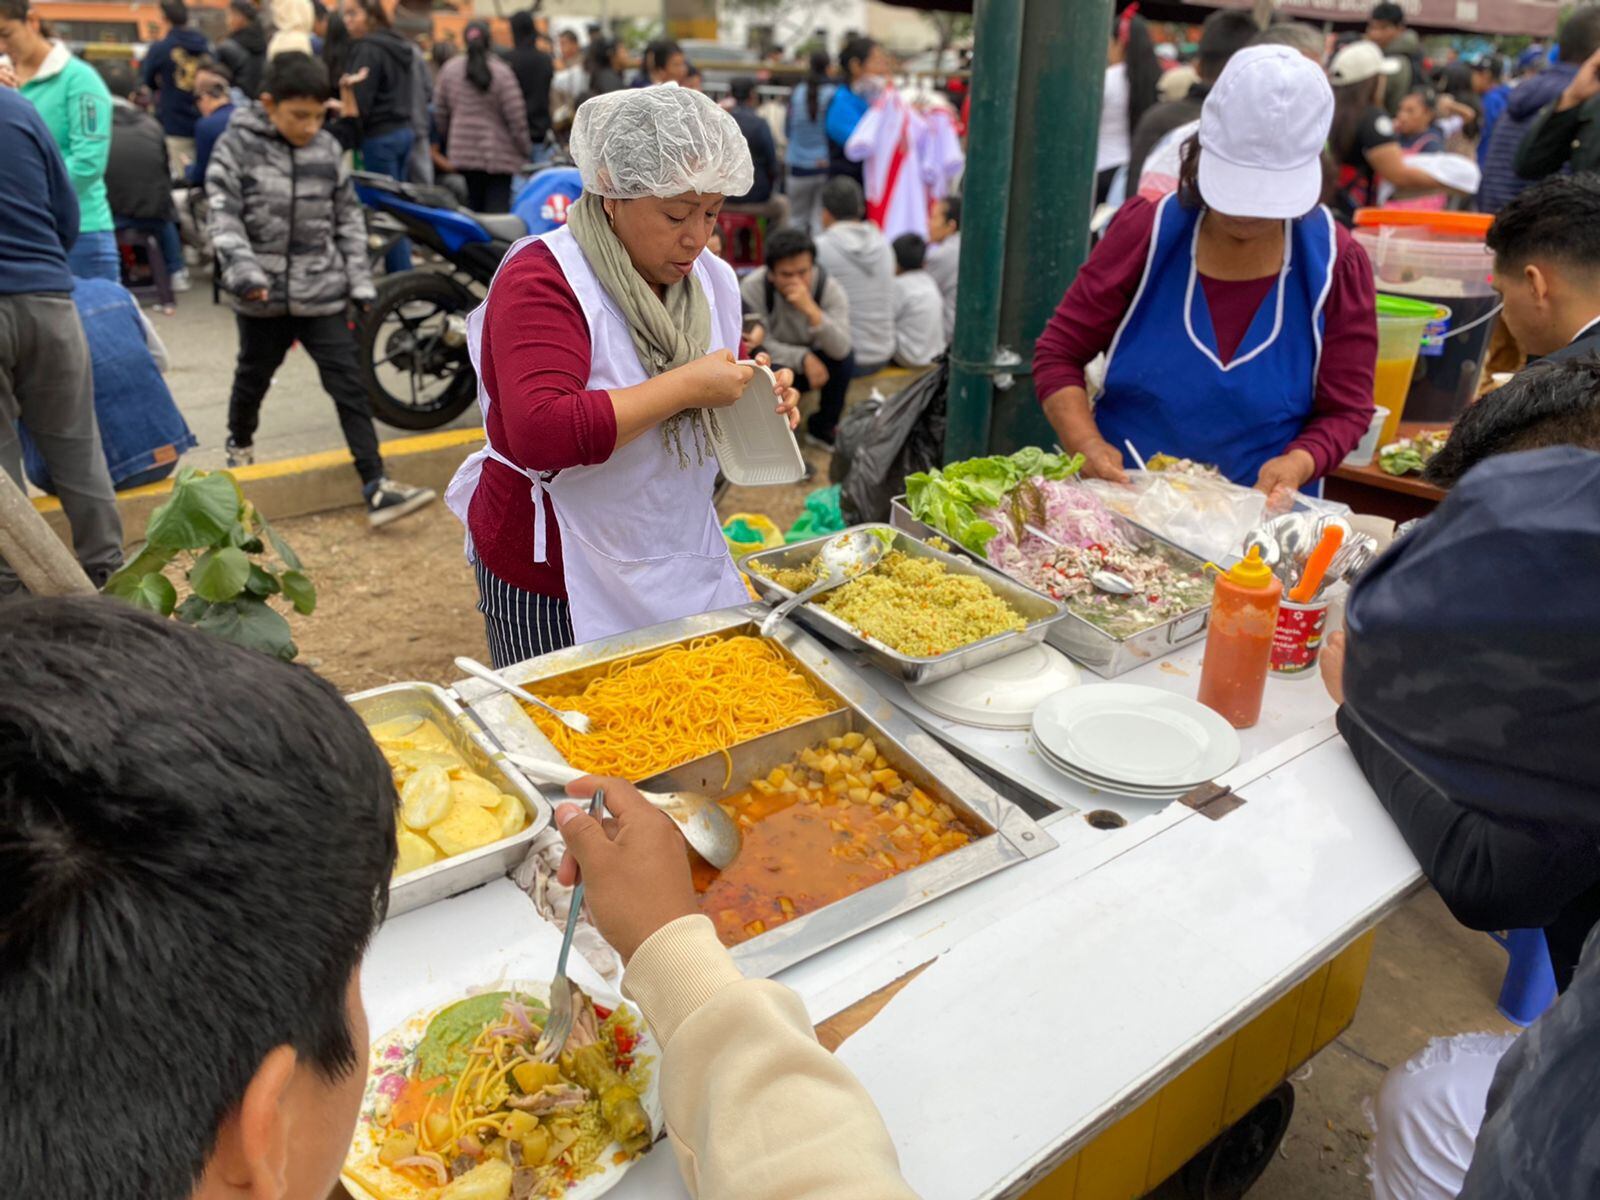 Cientos de personas llegan a la avenida Brasil para el Desfile Militar, pero antes disfrutan de la gastronomía popular peruana| Infobae Perú / Clara Giraldo